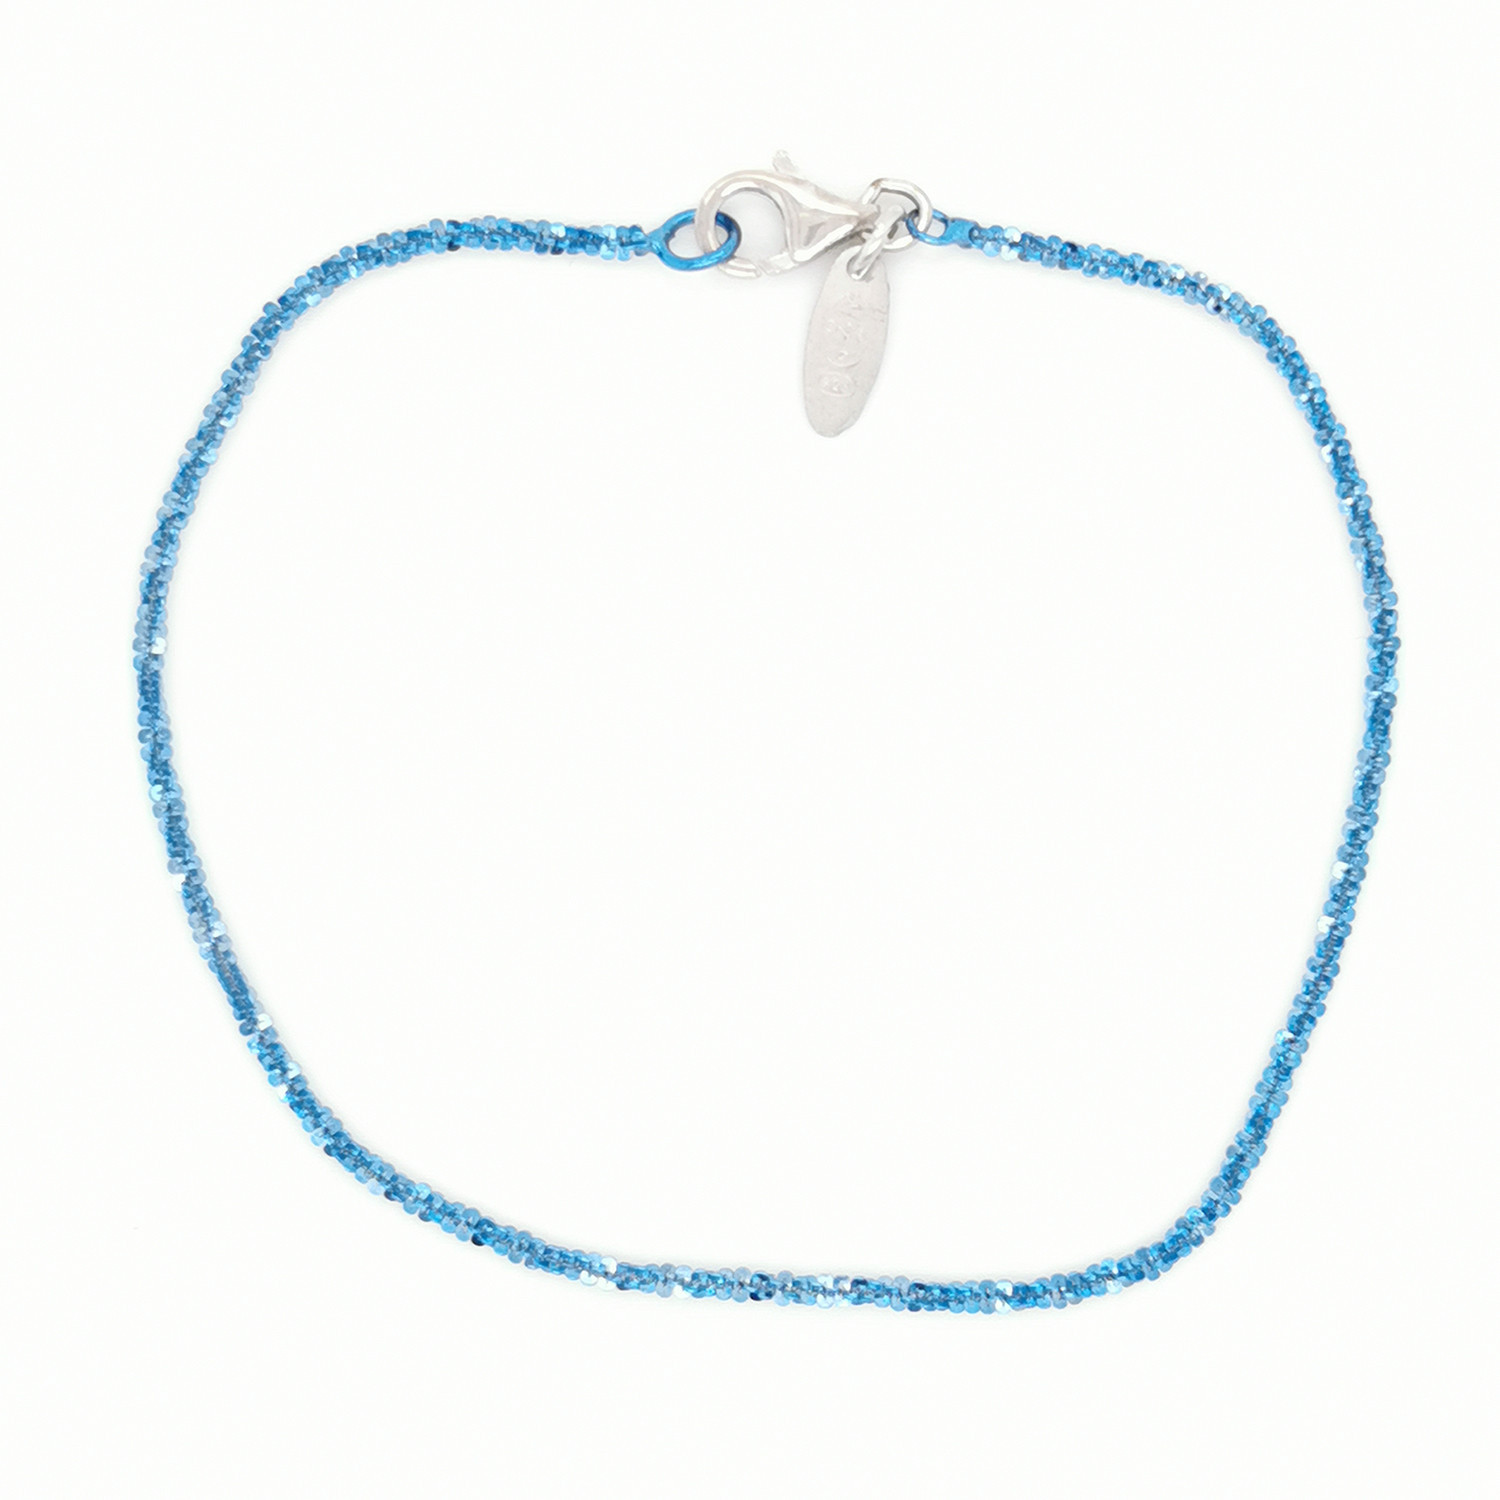 Bracelet Elden argent 925/1000 un rang bleu jean
collection Catch the Rainbow